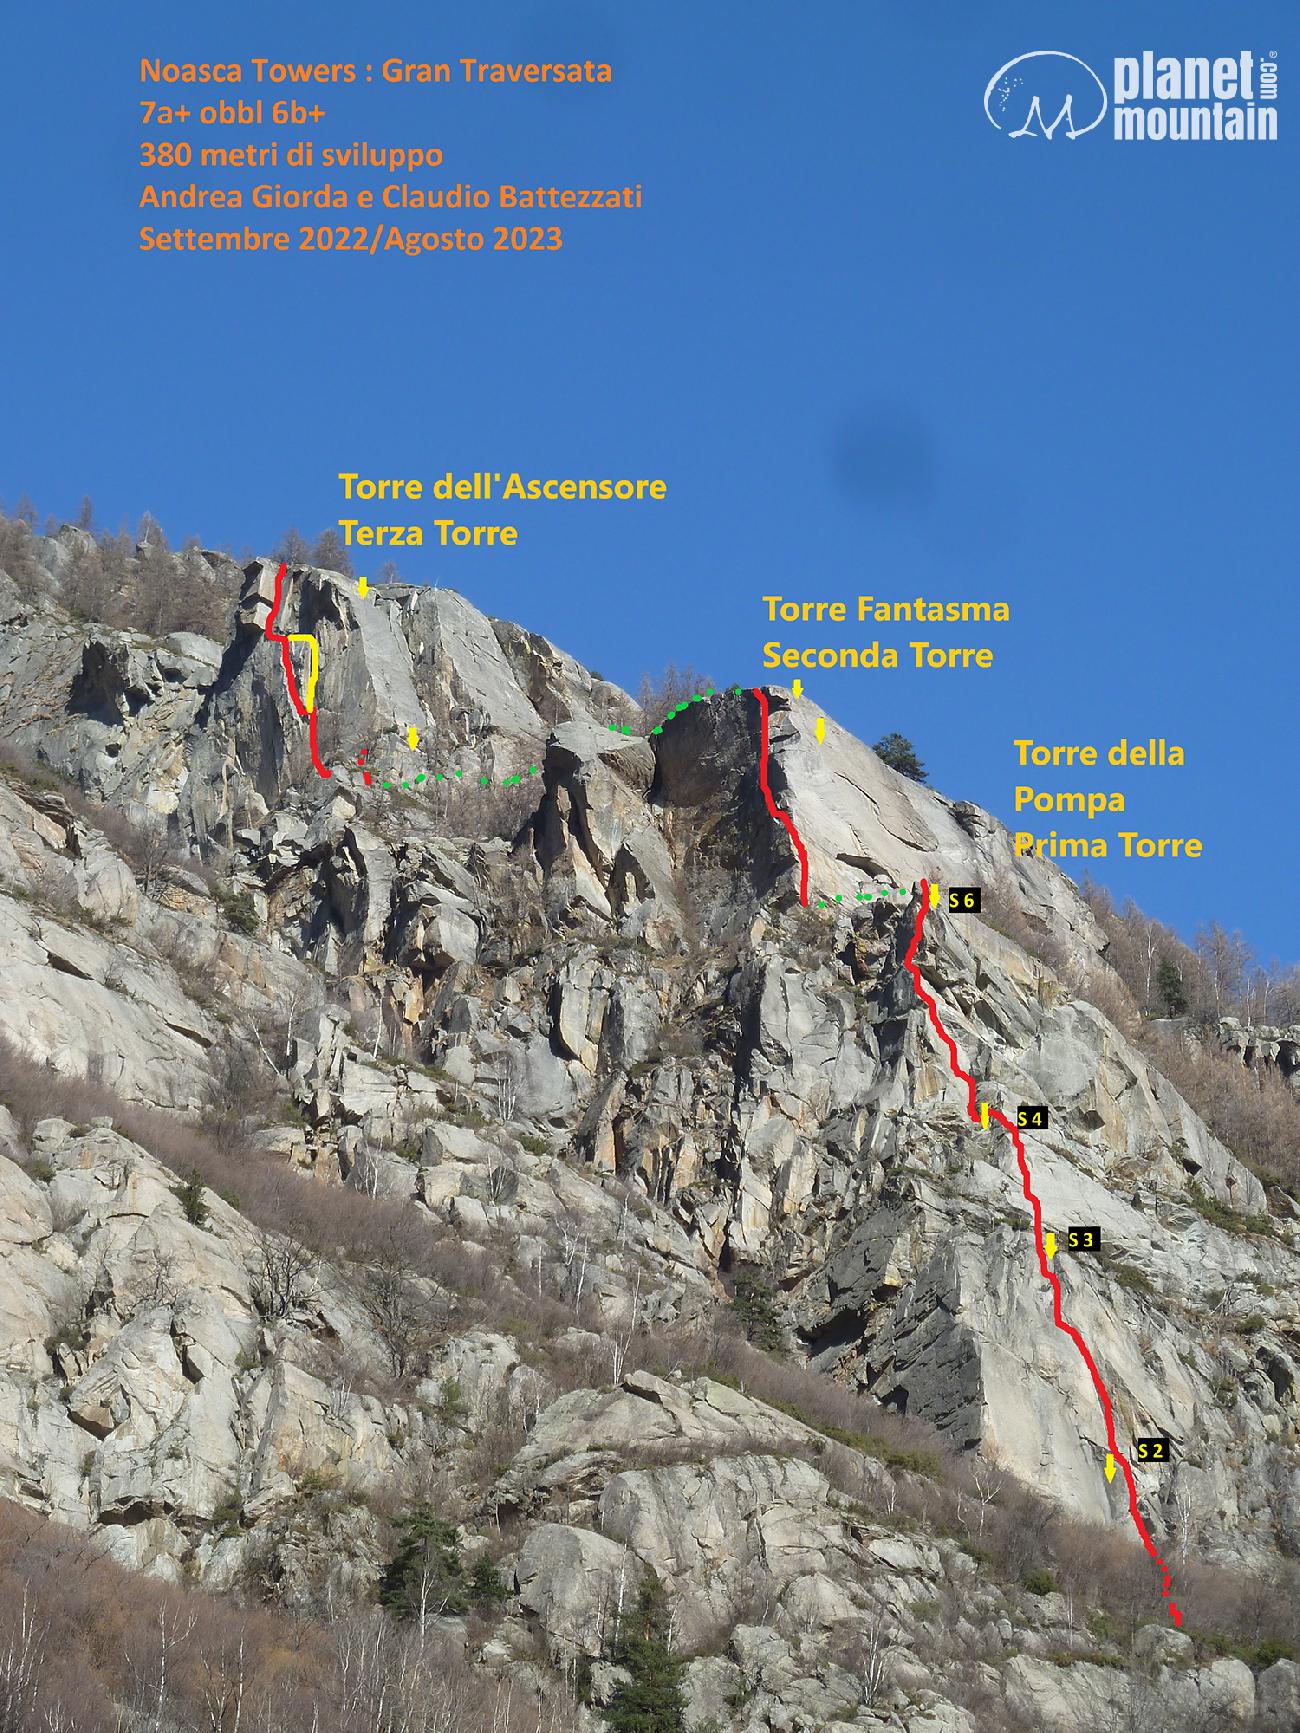 Valle dell'Orco, Noasca Towers Gran Traversata, Claudio Battezzati, Andrea Giorda